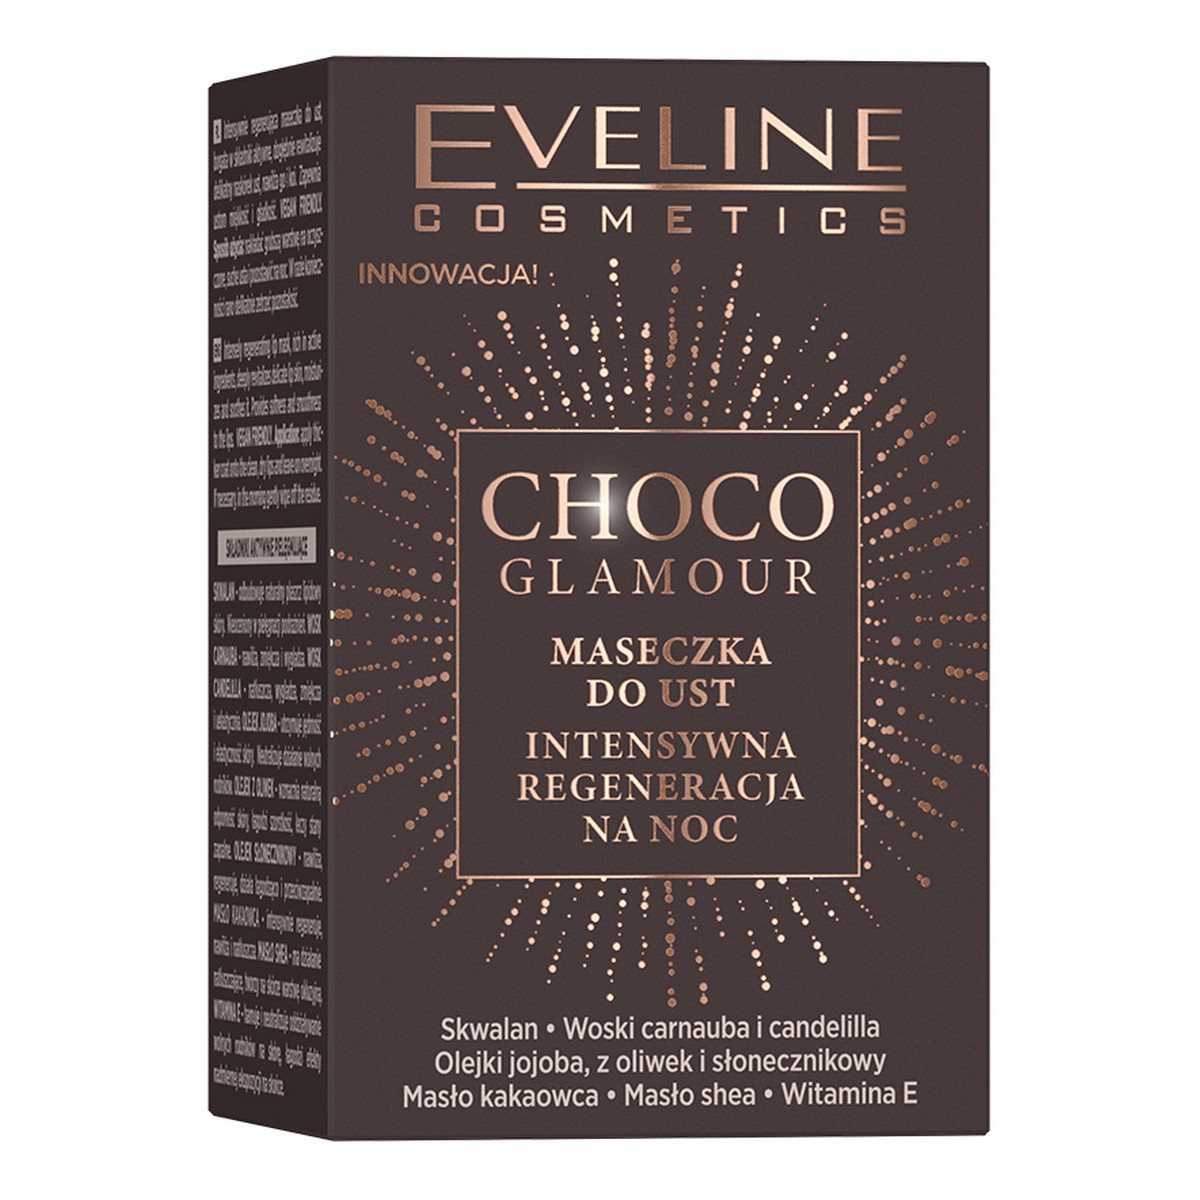 Eveline Choco Glamour Intensywnie regenerująca maseczka do ust na noc